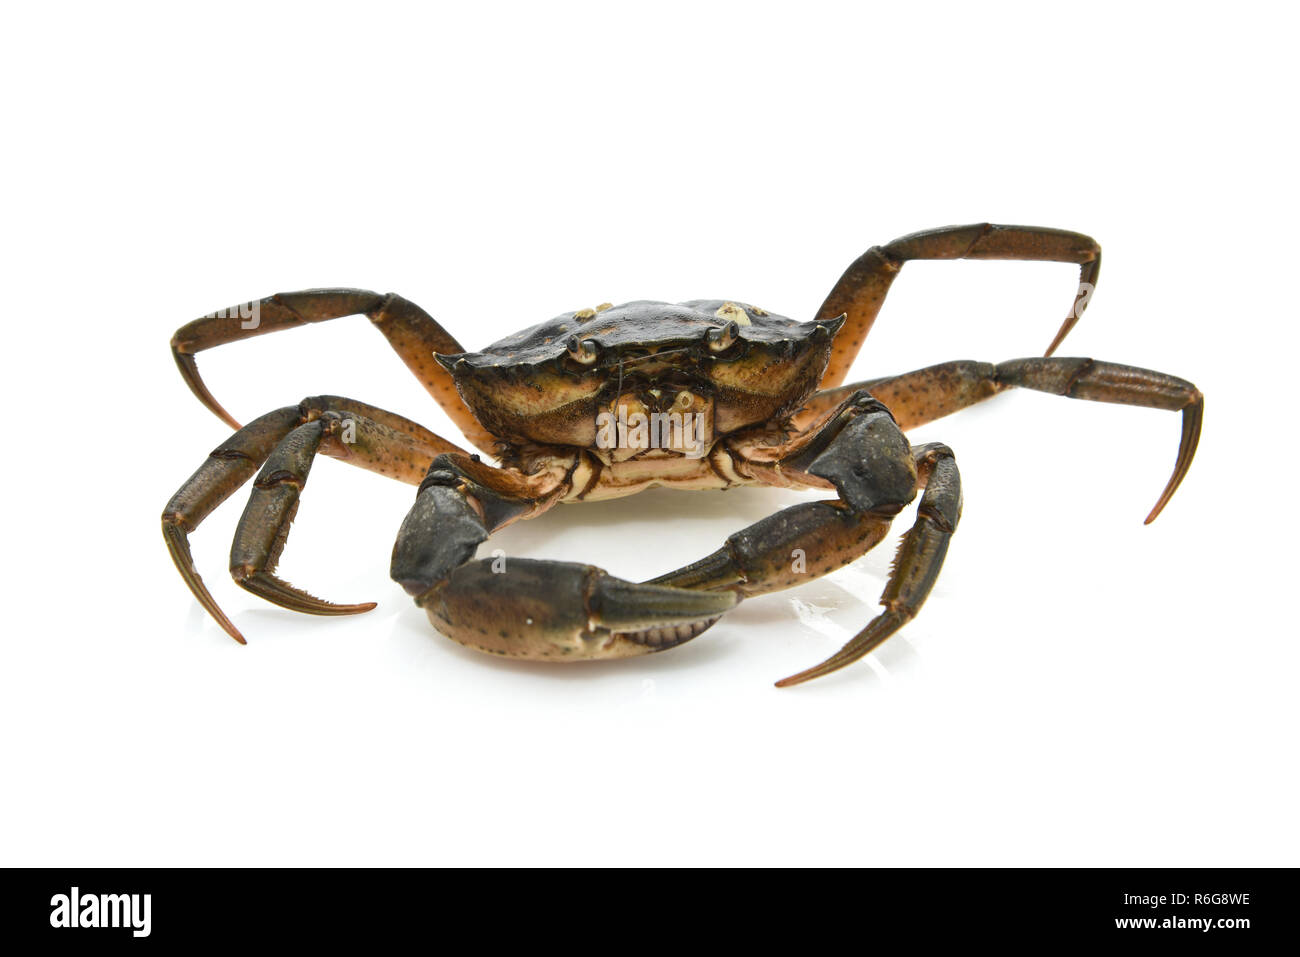 Le crabe. Les crustacés de la mer Noire Banque D'Images